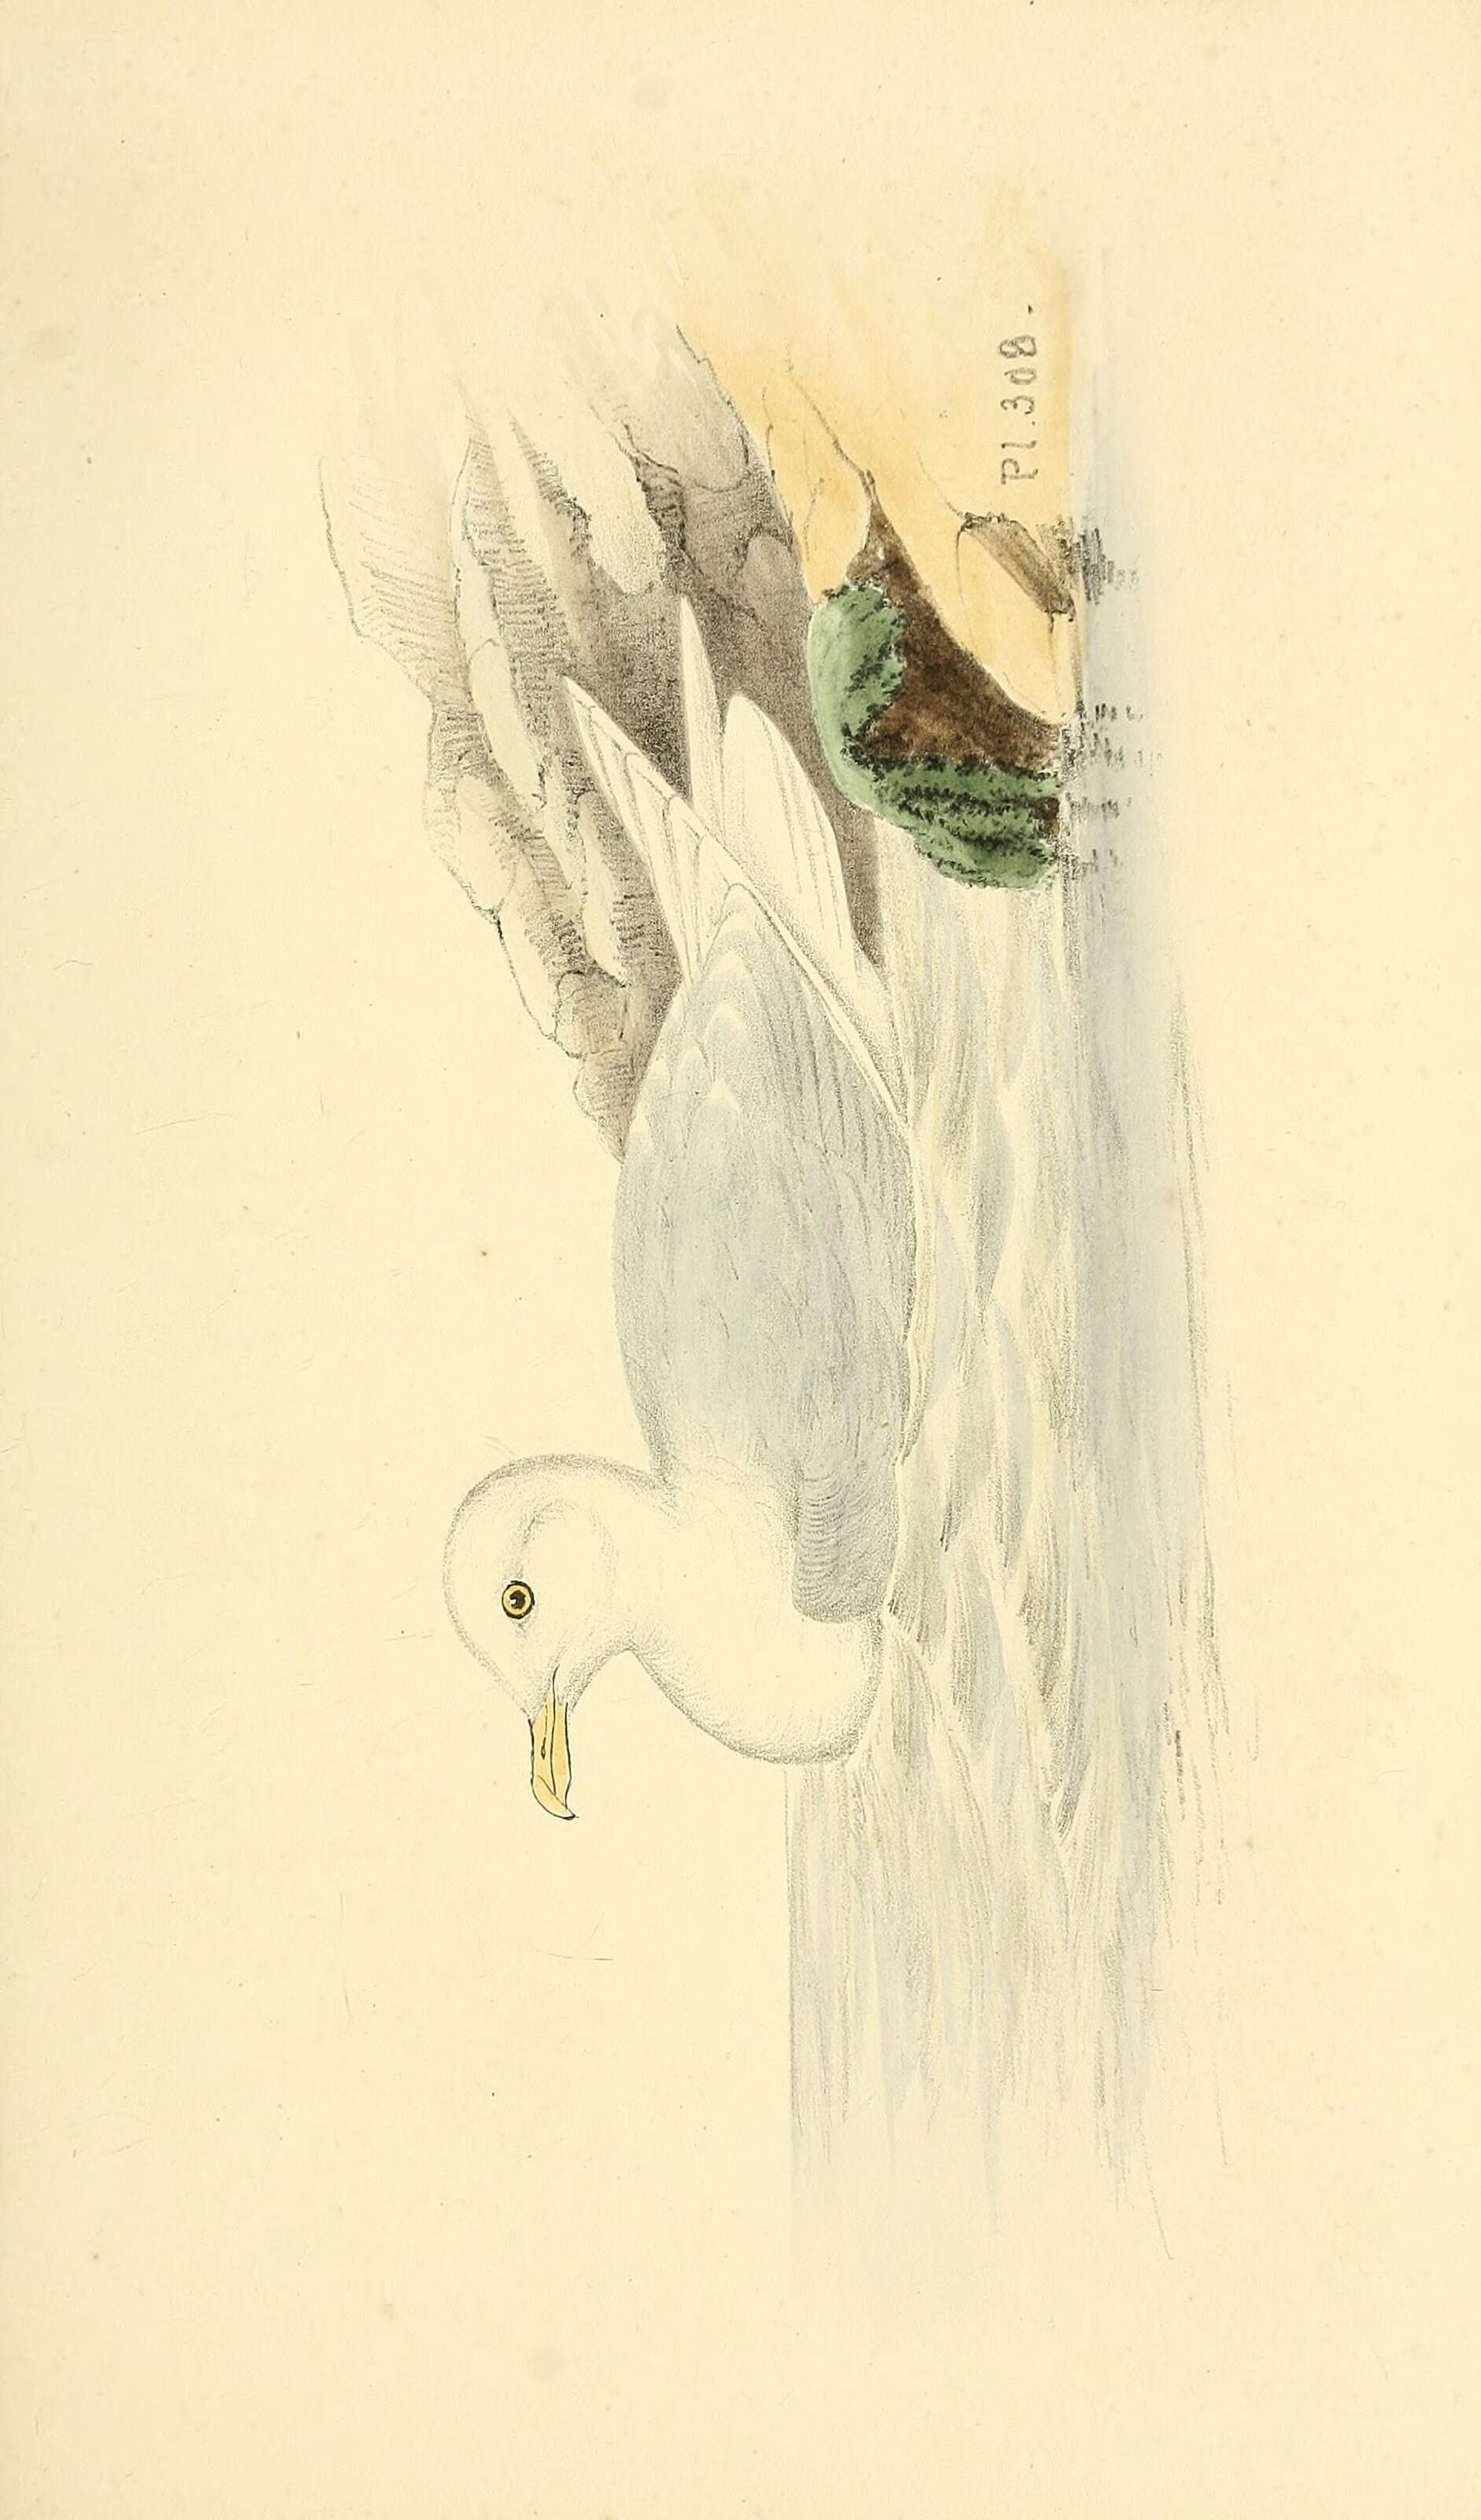 Image of Iceland Gull